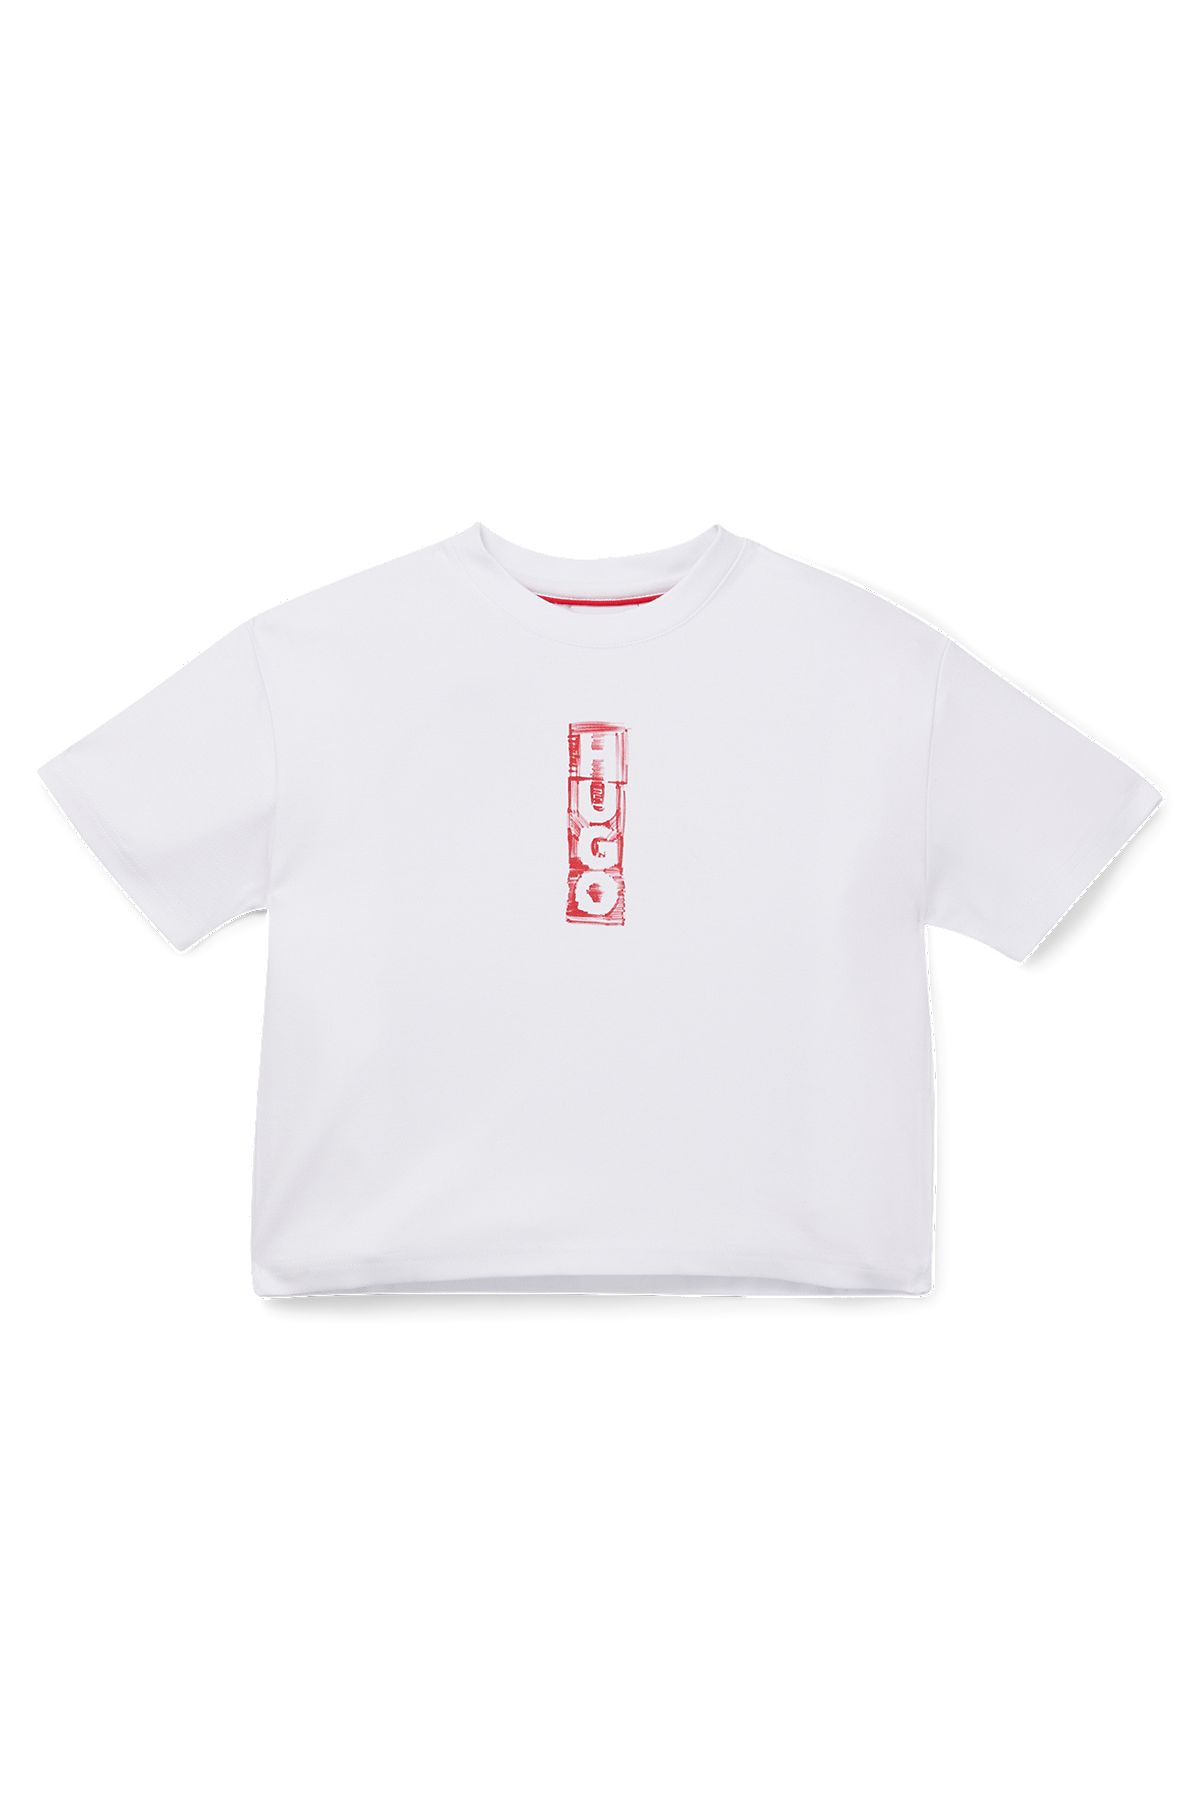 Kids-T-Shirt aus Stretch-Jersey mit Filzstift-Logos, Weiß